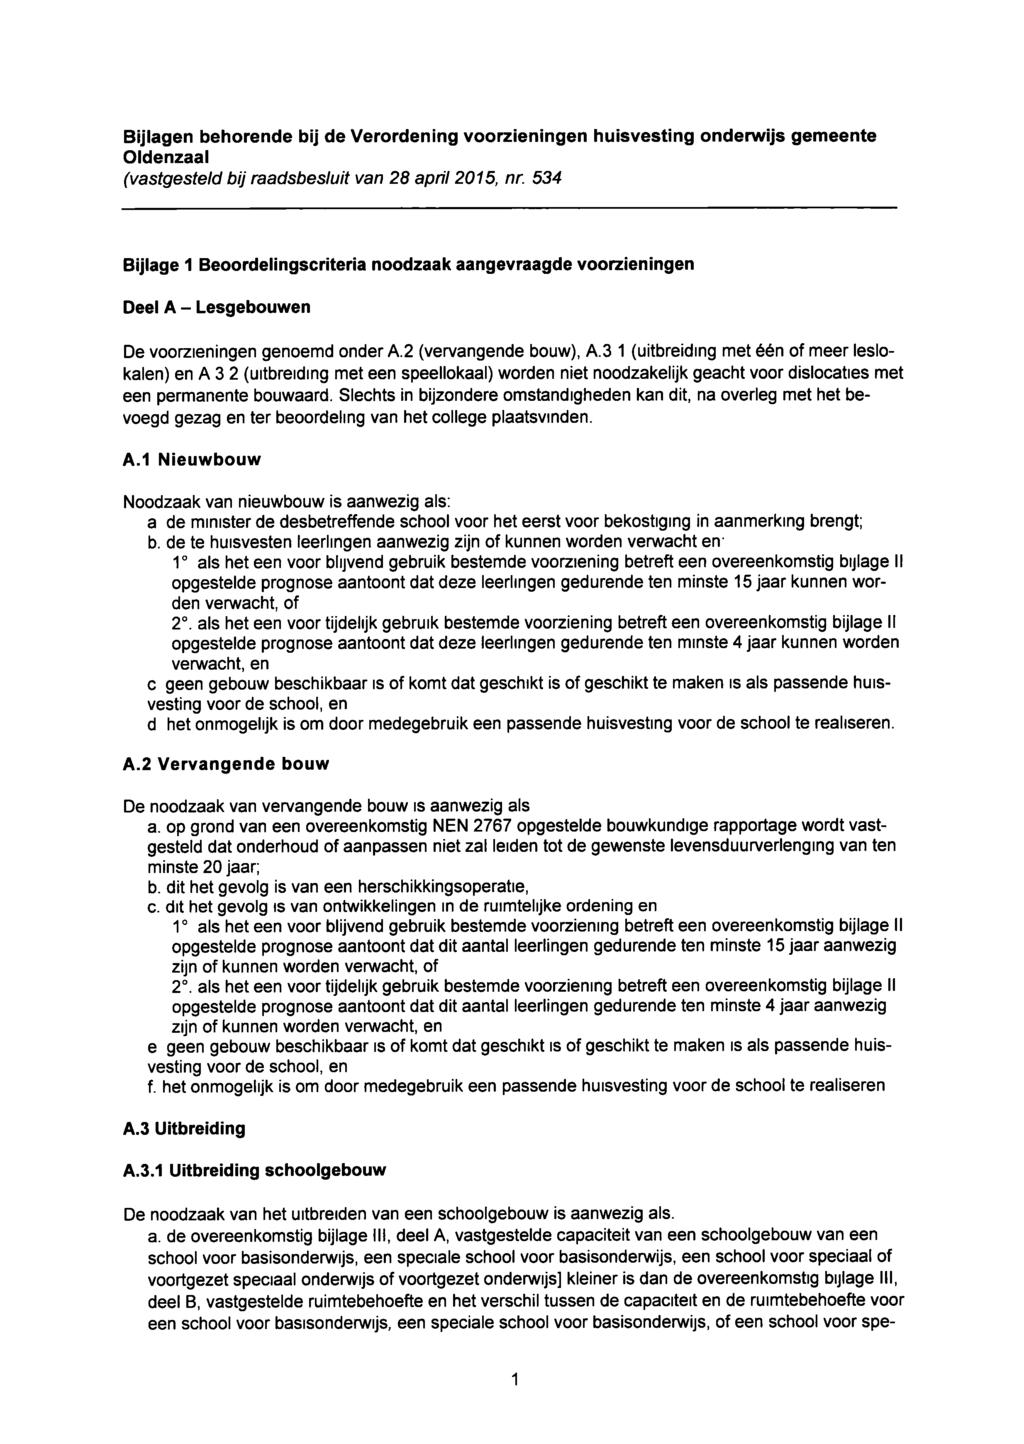 Bijlagen behorende bij de Verordening voorzieningen huisvesting onderwijs gemeente Oidenzaal (vastgesteld bij raadsbesluit van 28 april 2015, nr.